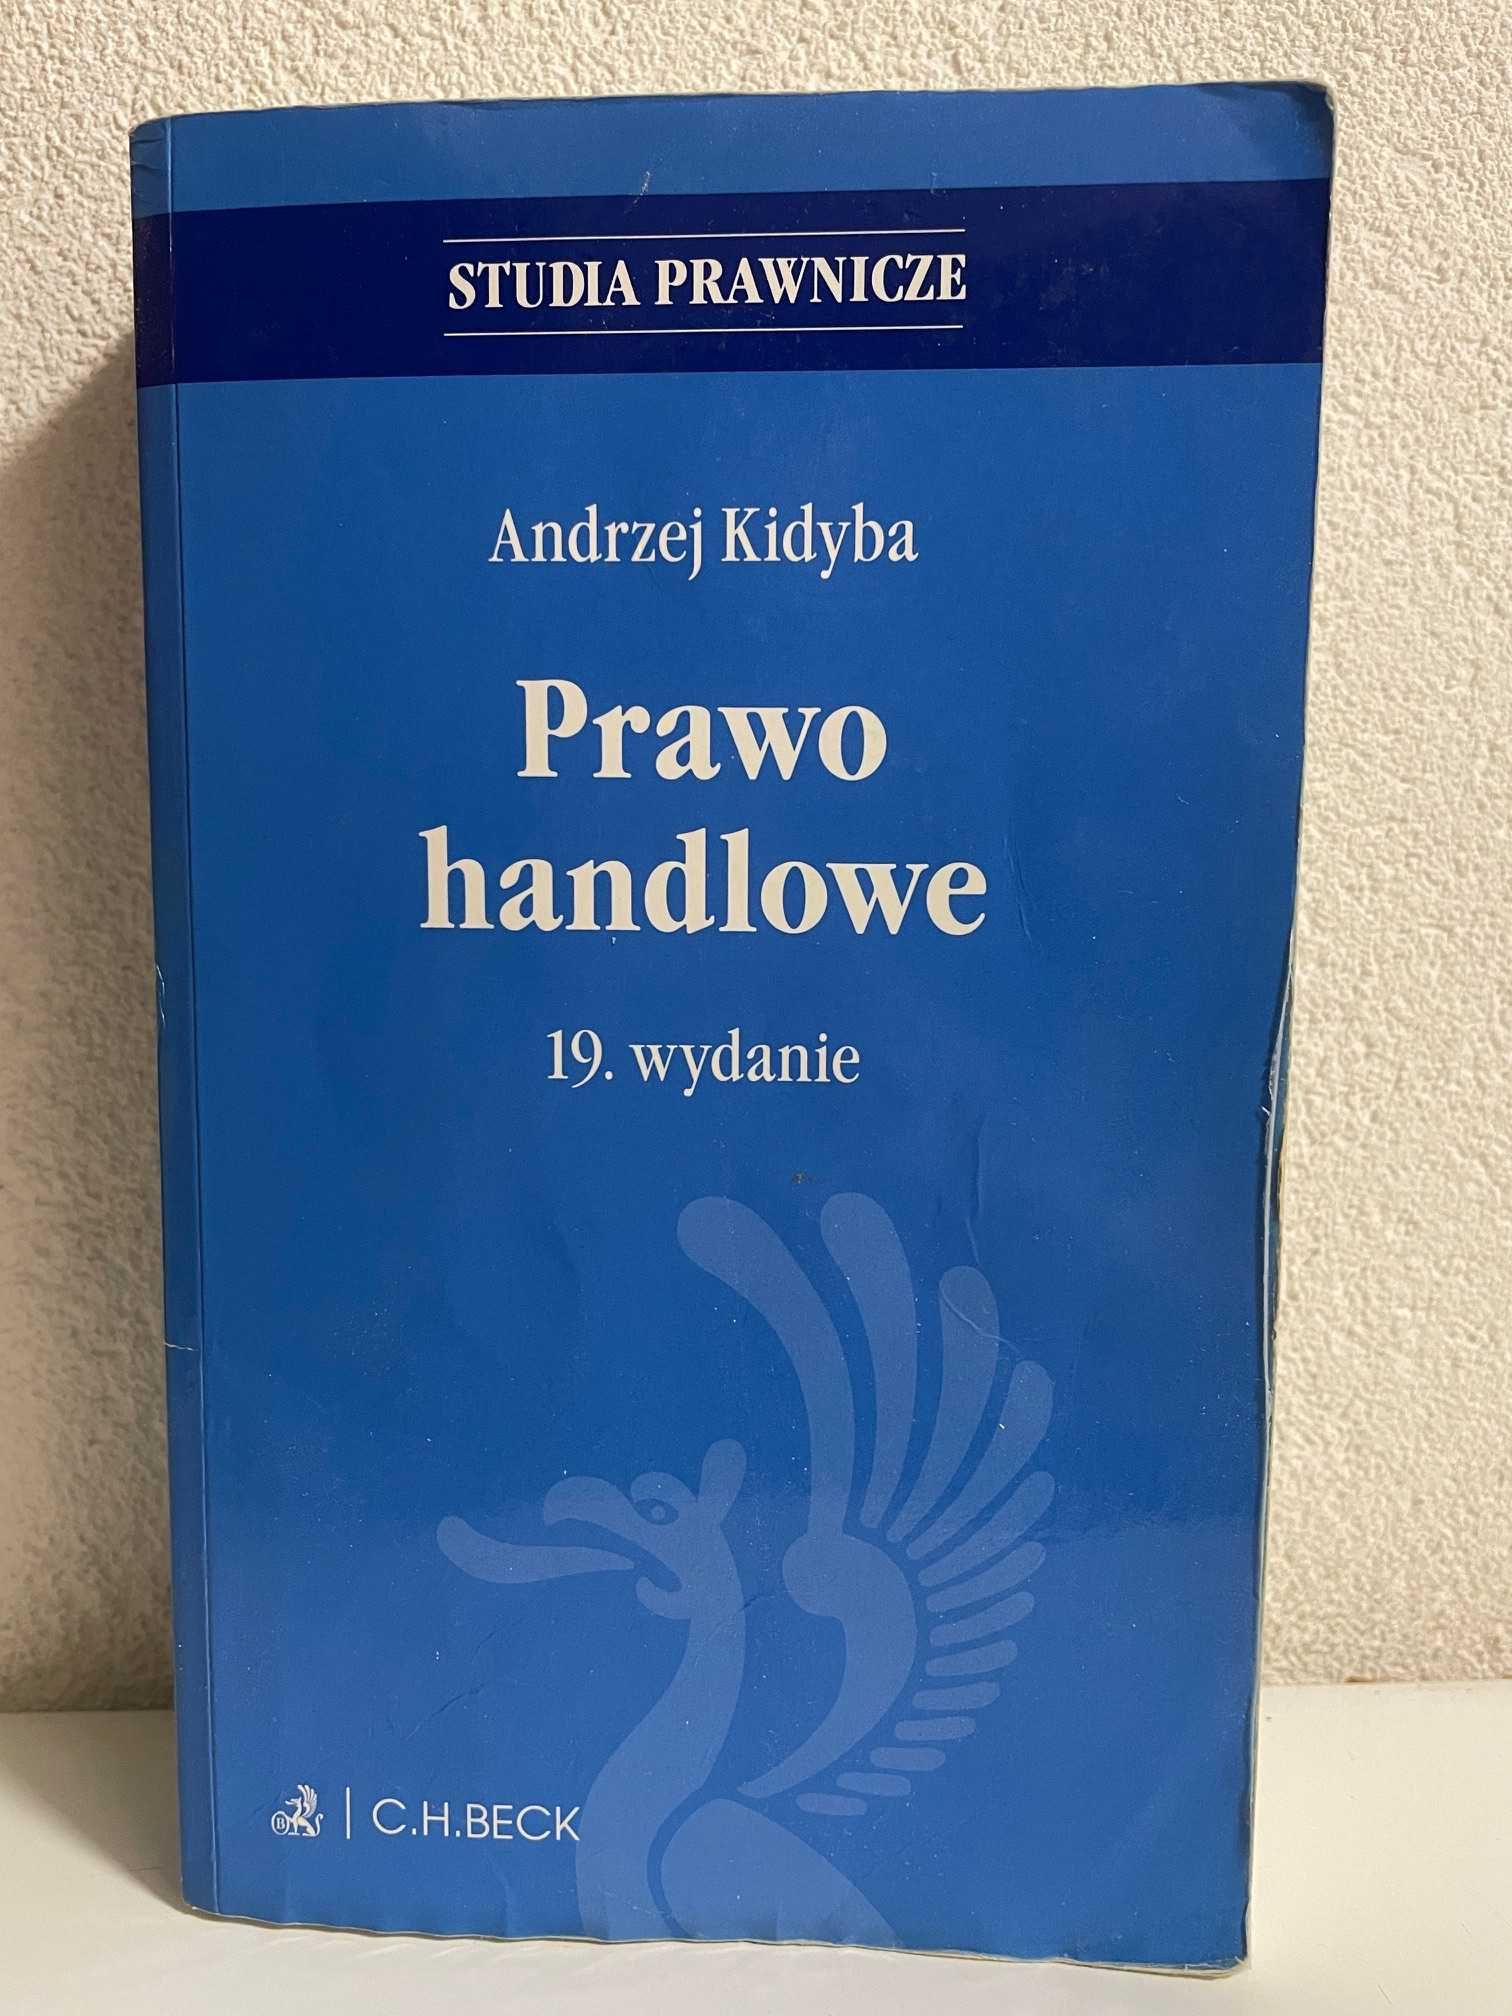 ,,Prawo handlowe'' Andrzej Kidyba.Wydawnictwo C.H.BECK